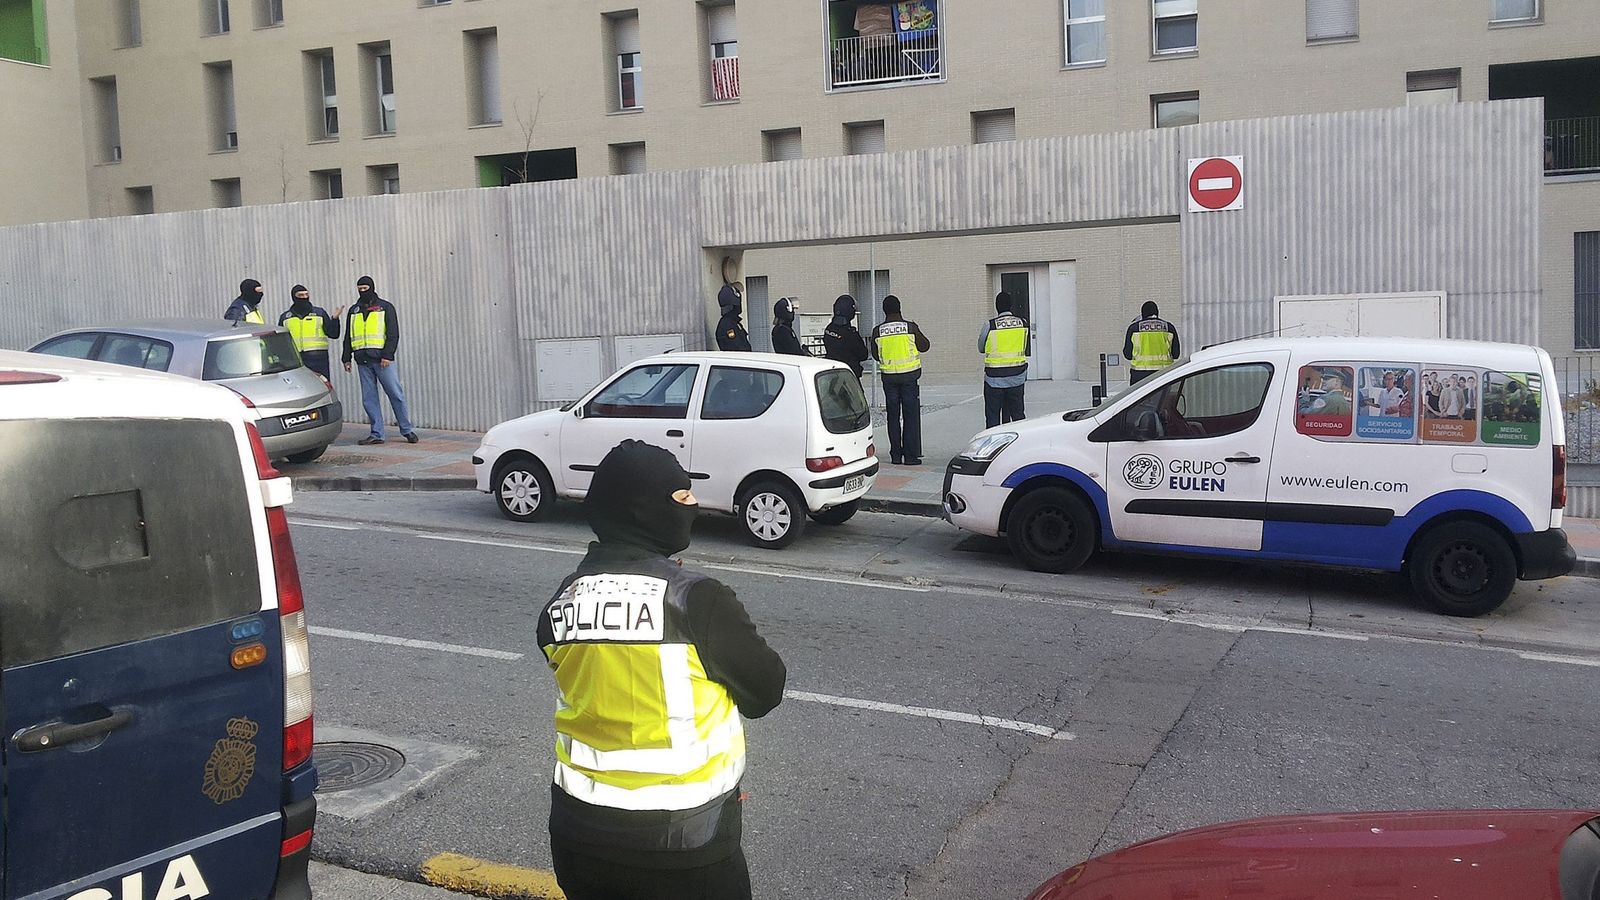 Foto: Foto de archivo de la policía de Ceuta realizando detenciones relacionadas con el Daesh.